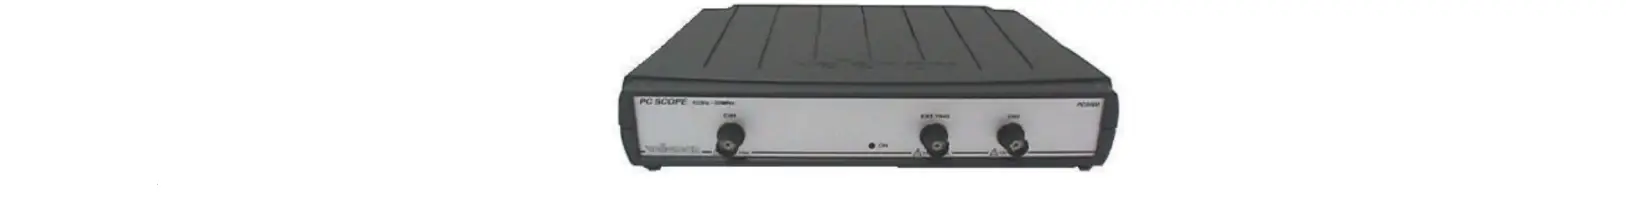 PCS500 2-CHANNEL PC Scopes